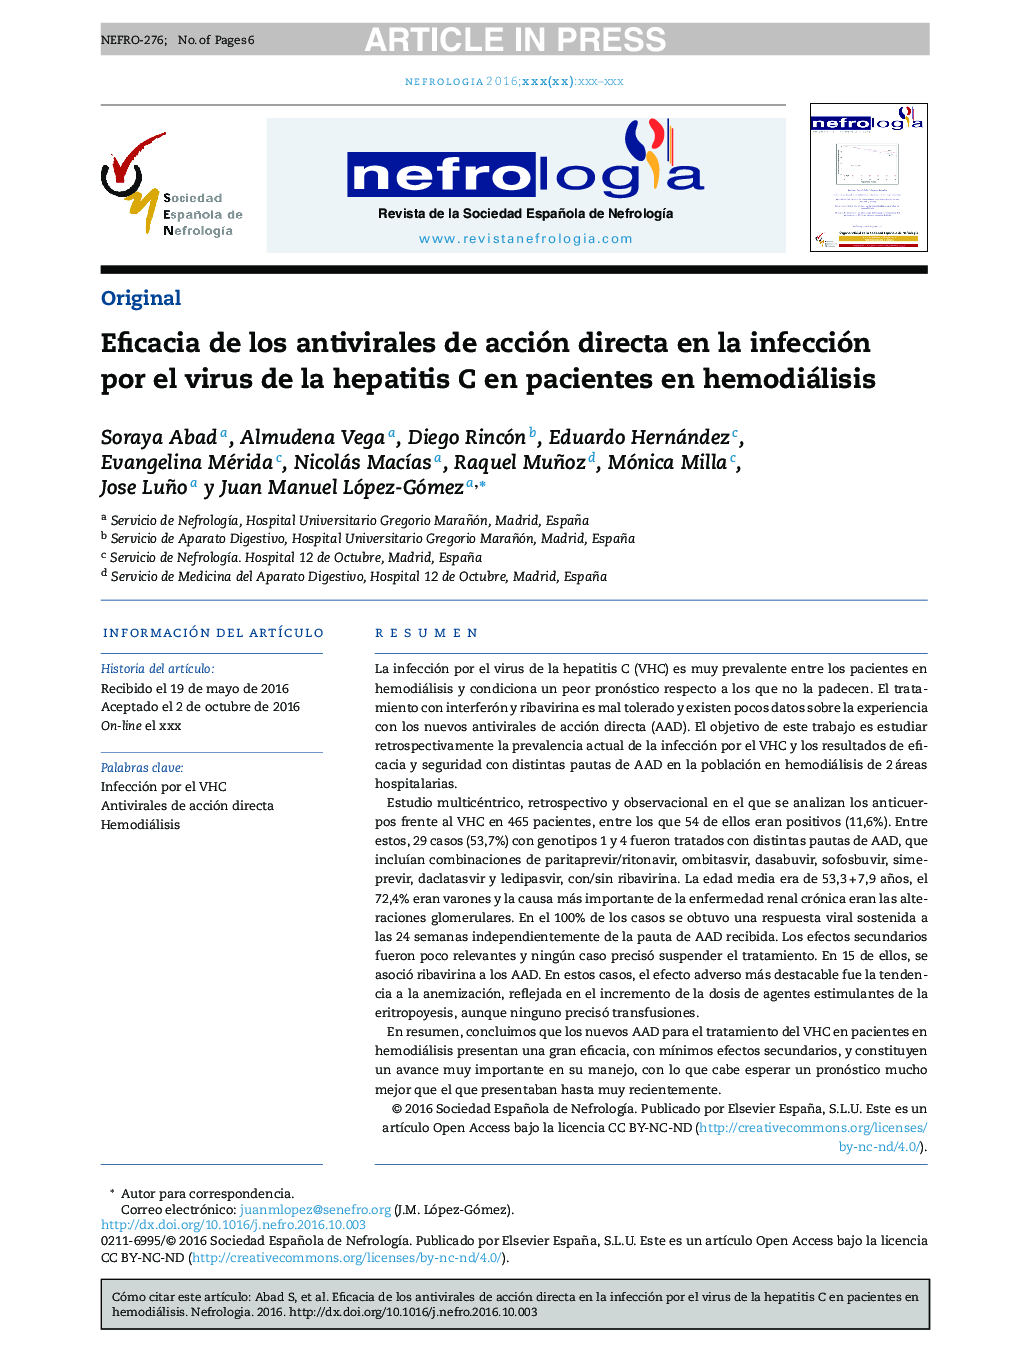 Eficacia de los antivirales de acción directa en la infección por el virus de la hepatitis C en pacientes en hemodiálisis